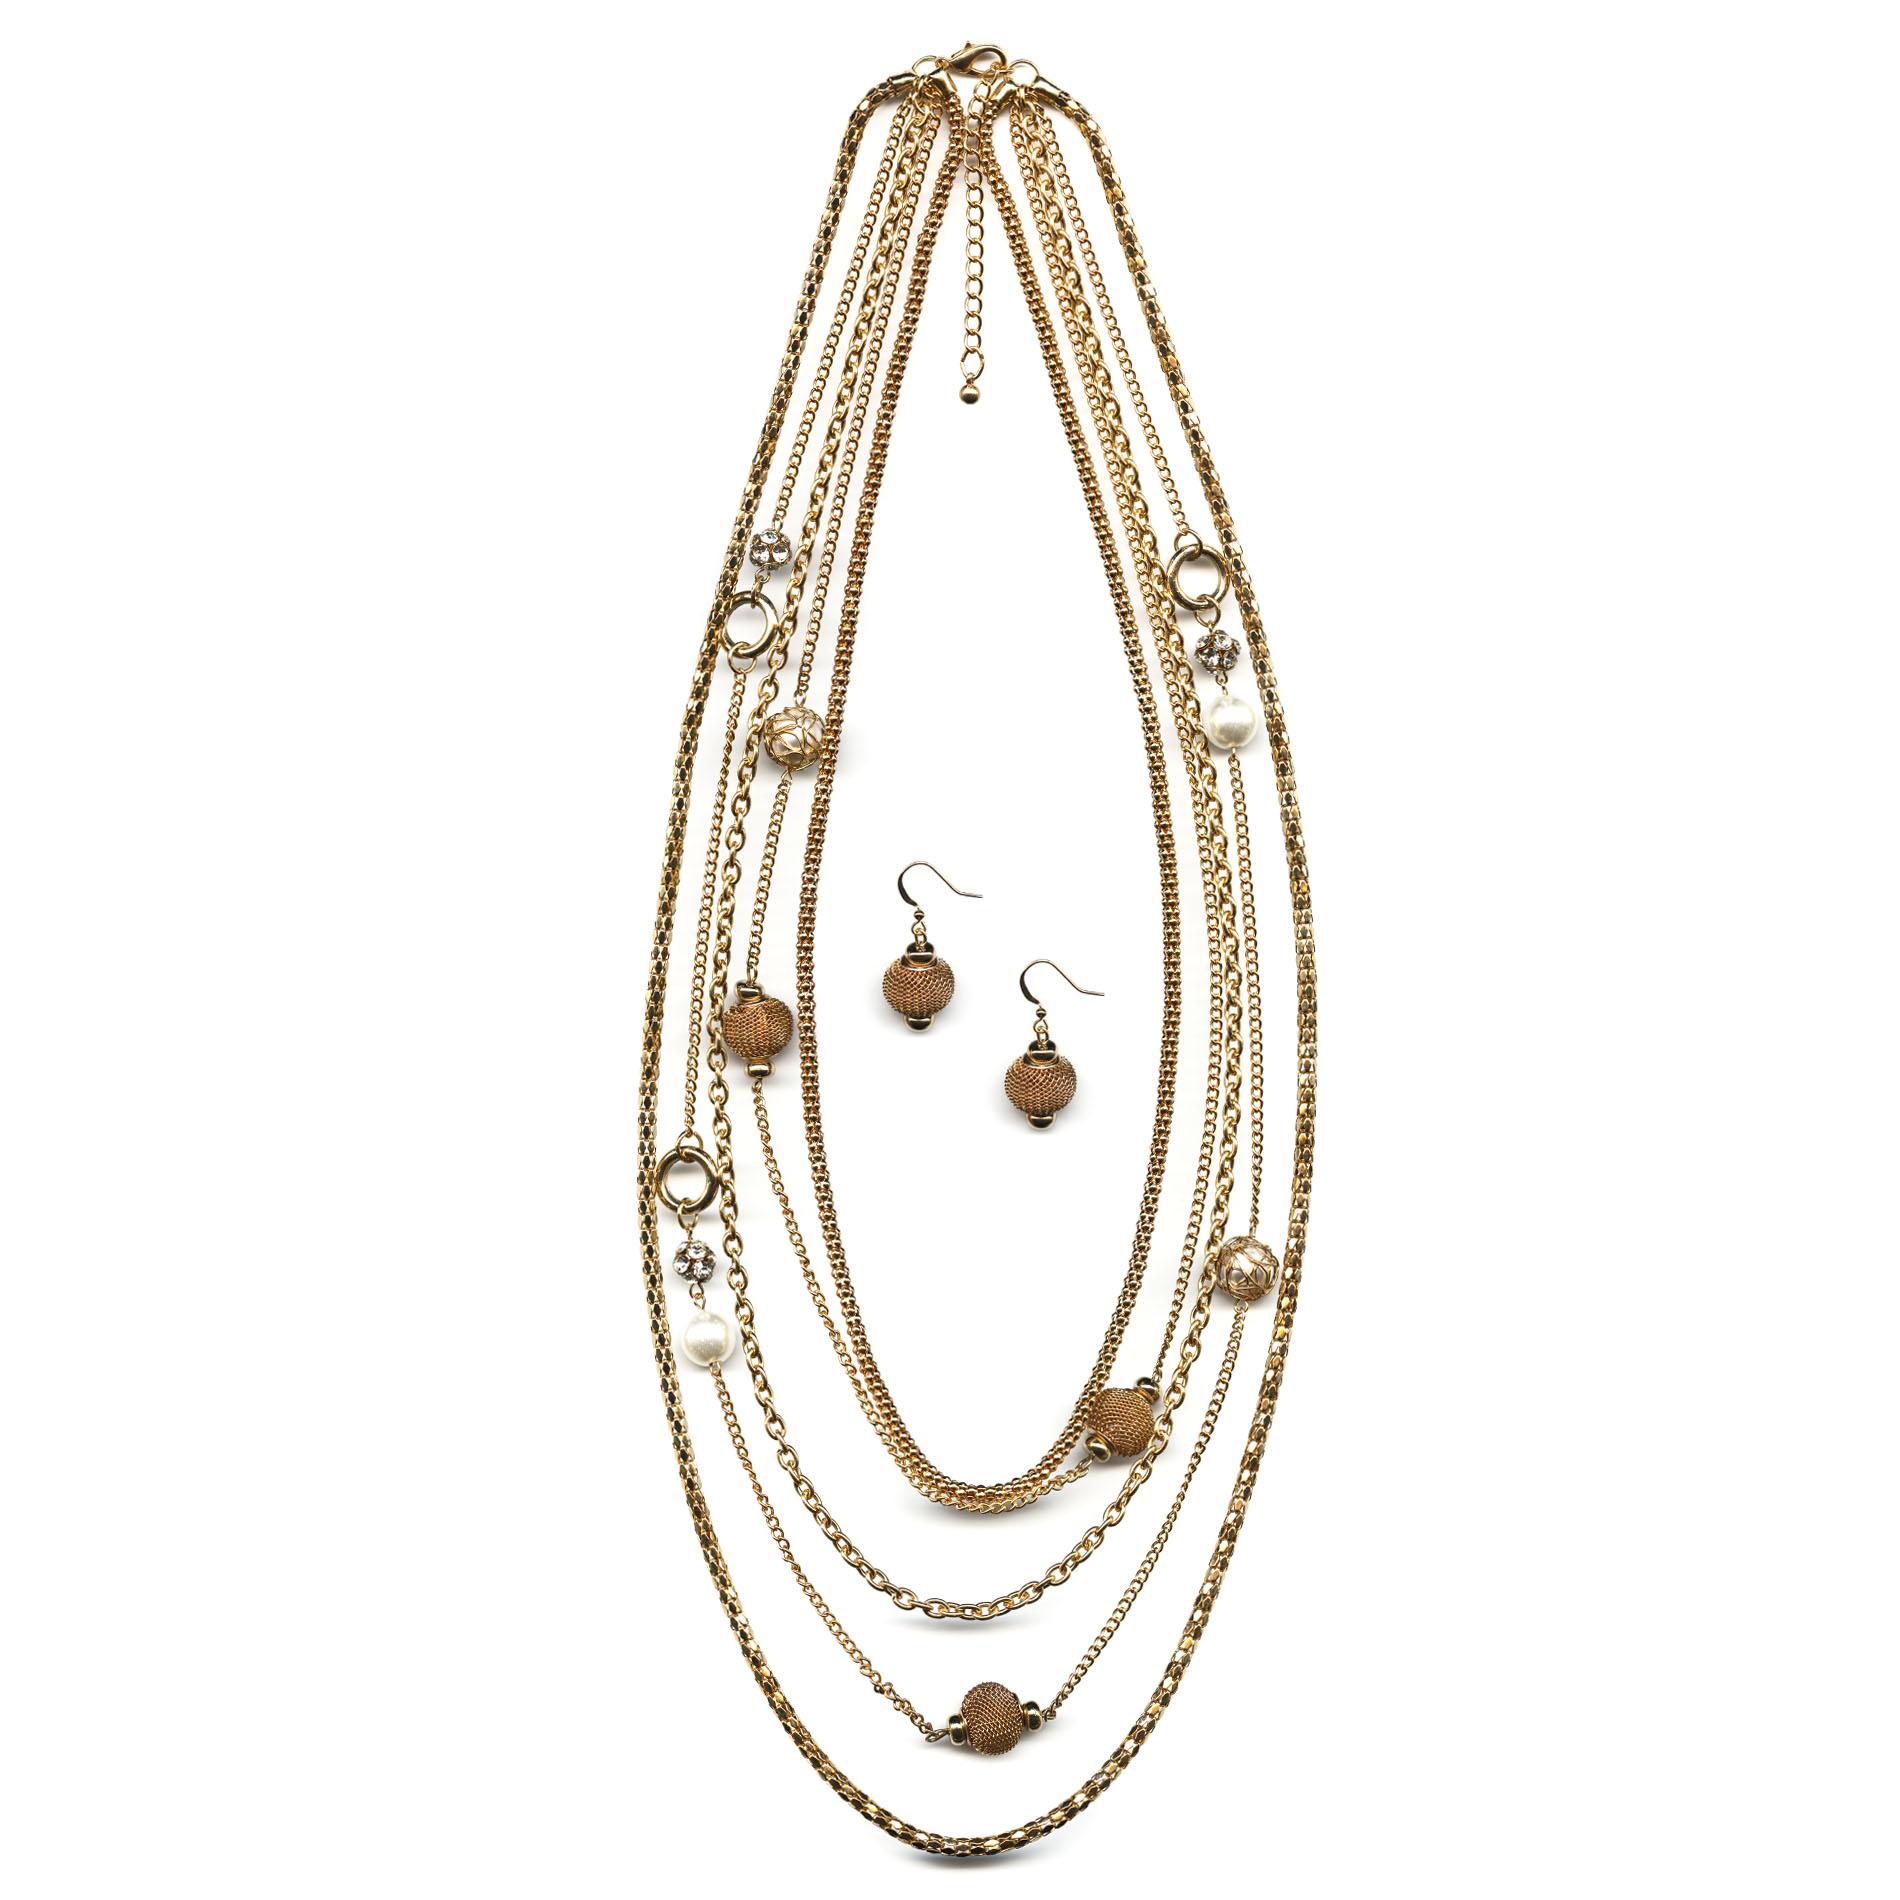 Jaclyn Smith Women's Goldtone Multi-Chain Necklace & Earrings